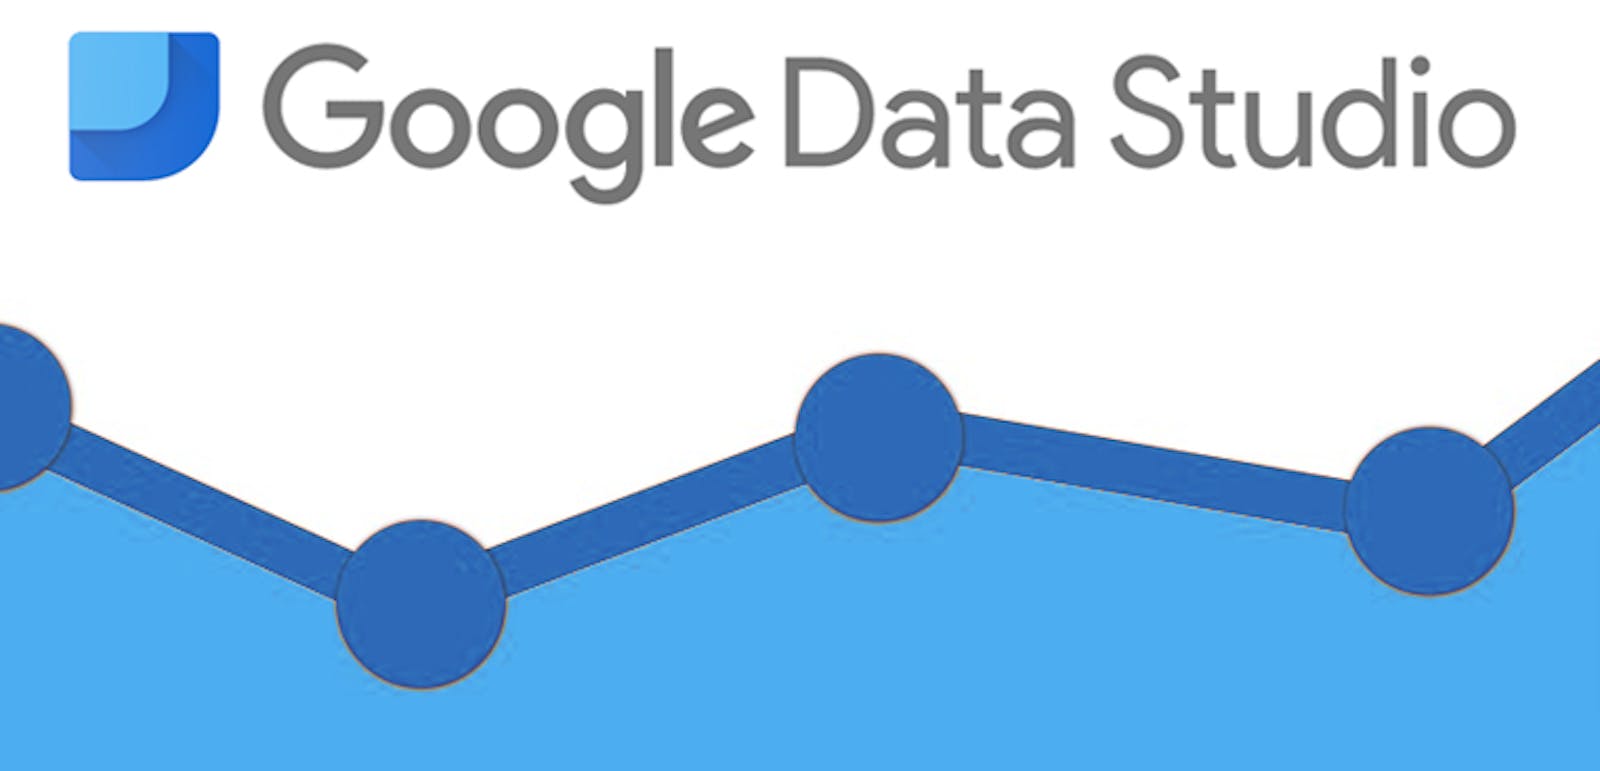 Google Data Studio for Google Analytics reporting